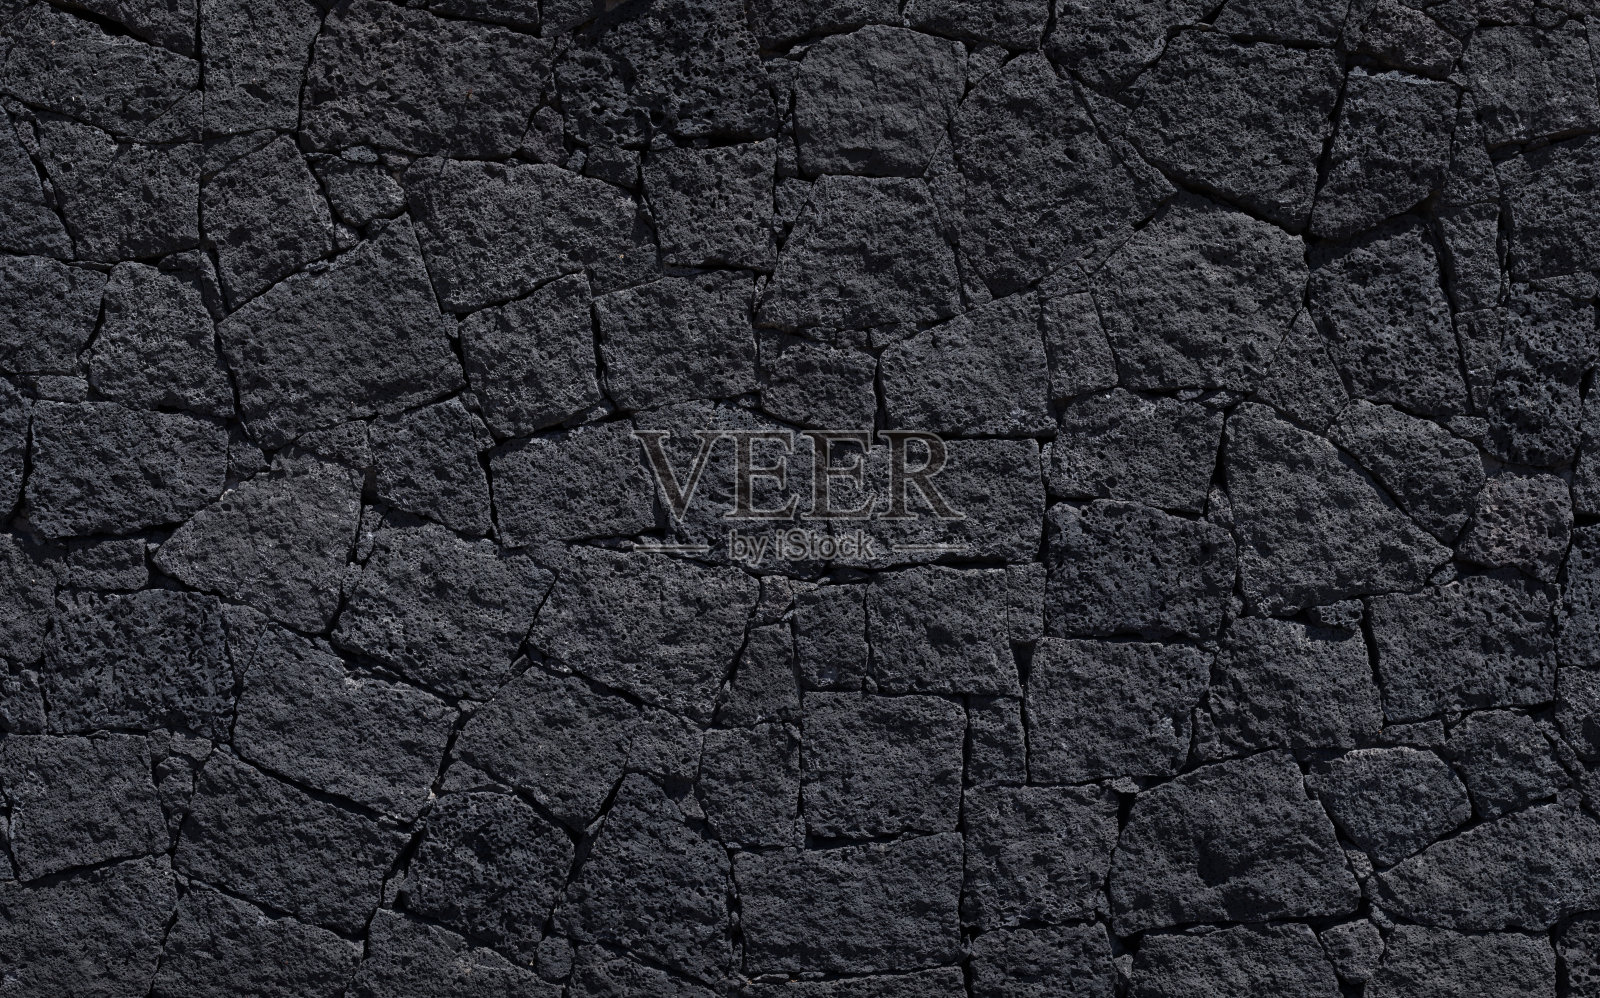 熔岩砾石背景-黑色颜色-股票图像插画图片素材